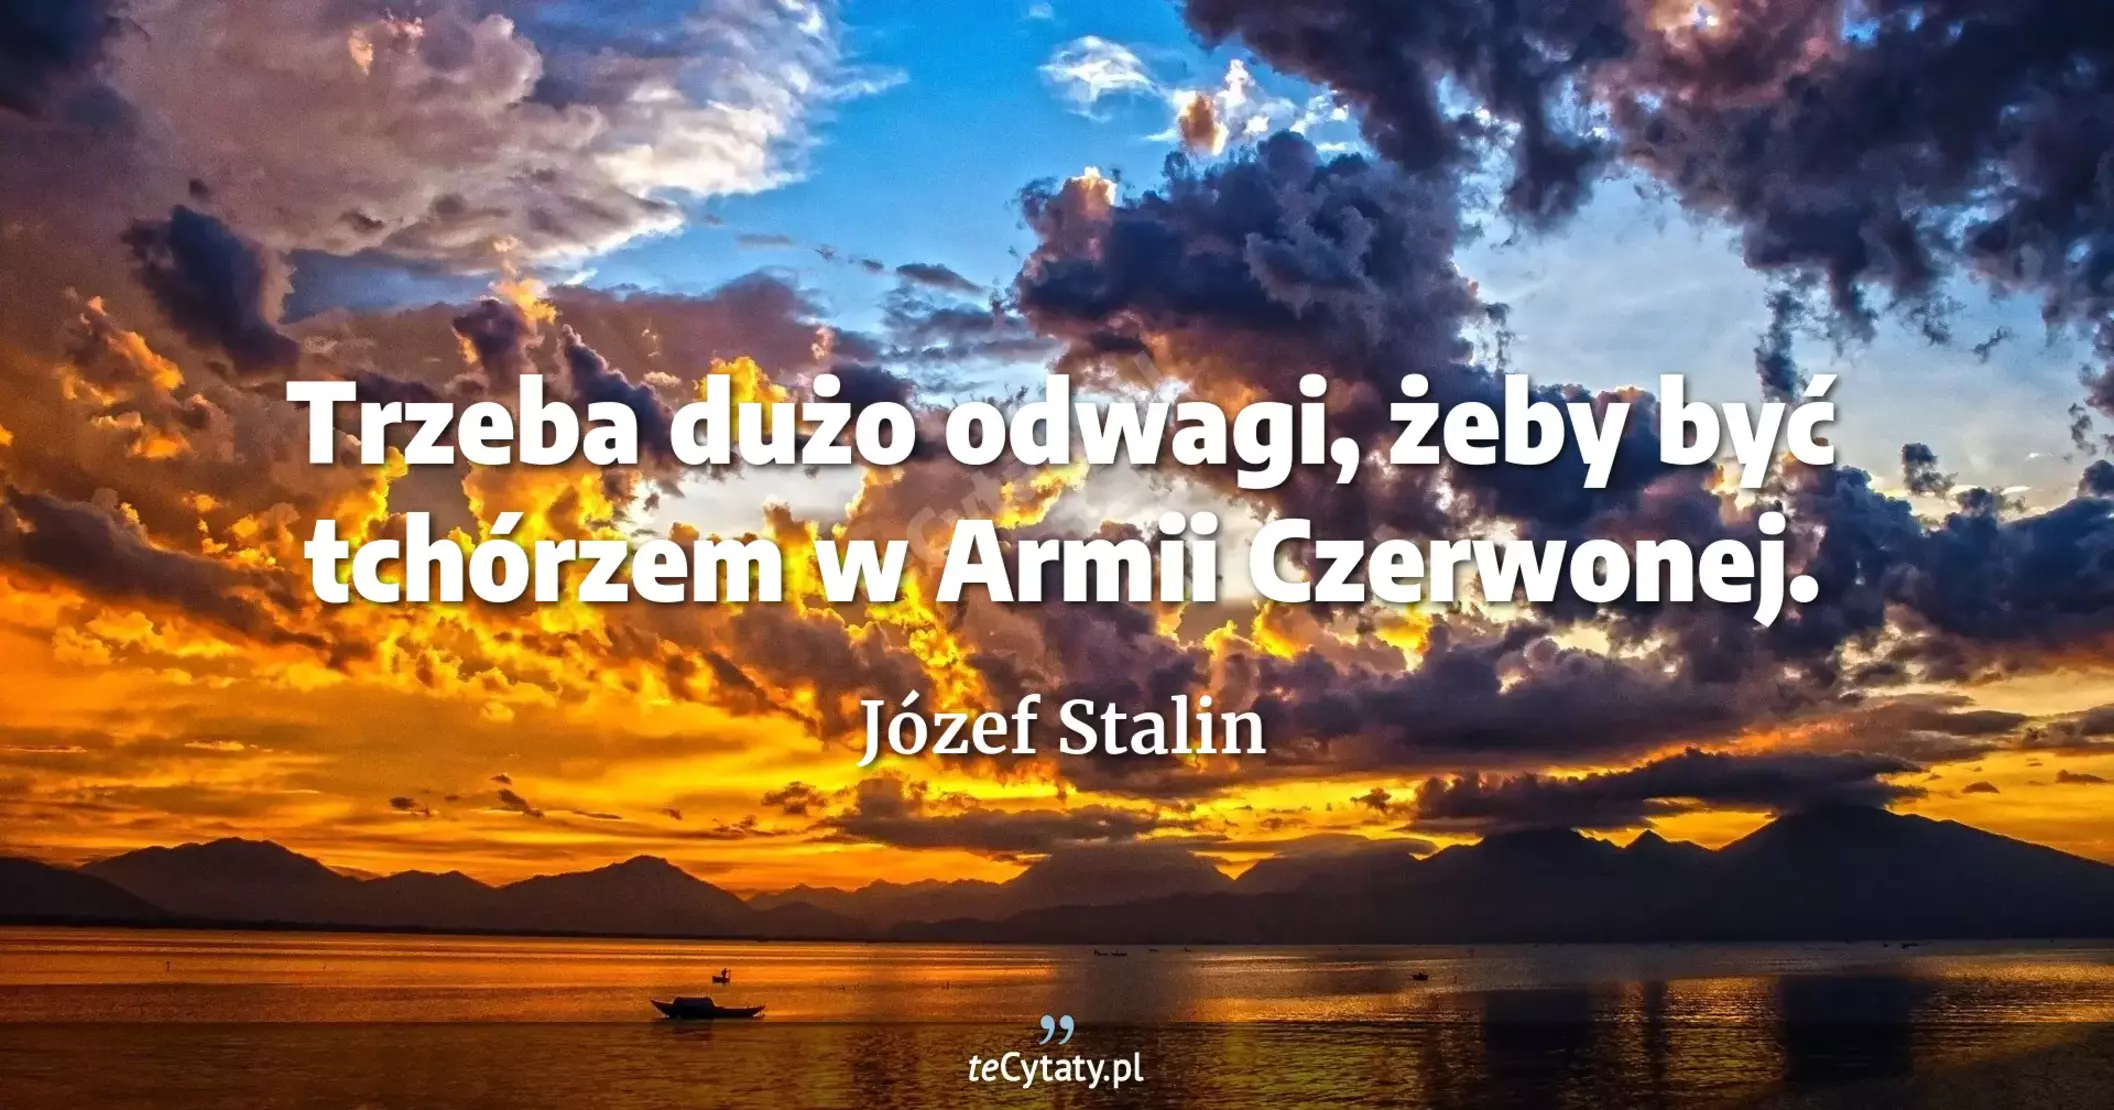 Trzeba dużo odwagi, żeby być tchórzem w Armii Czerwonej. - Józef Stalin